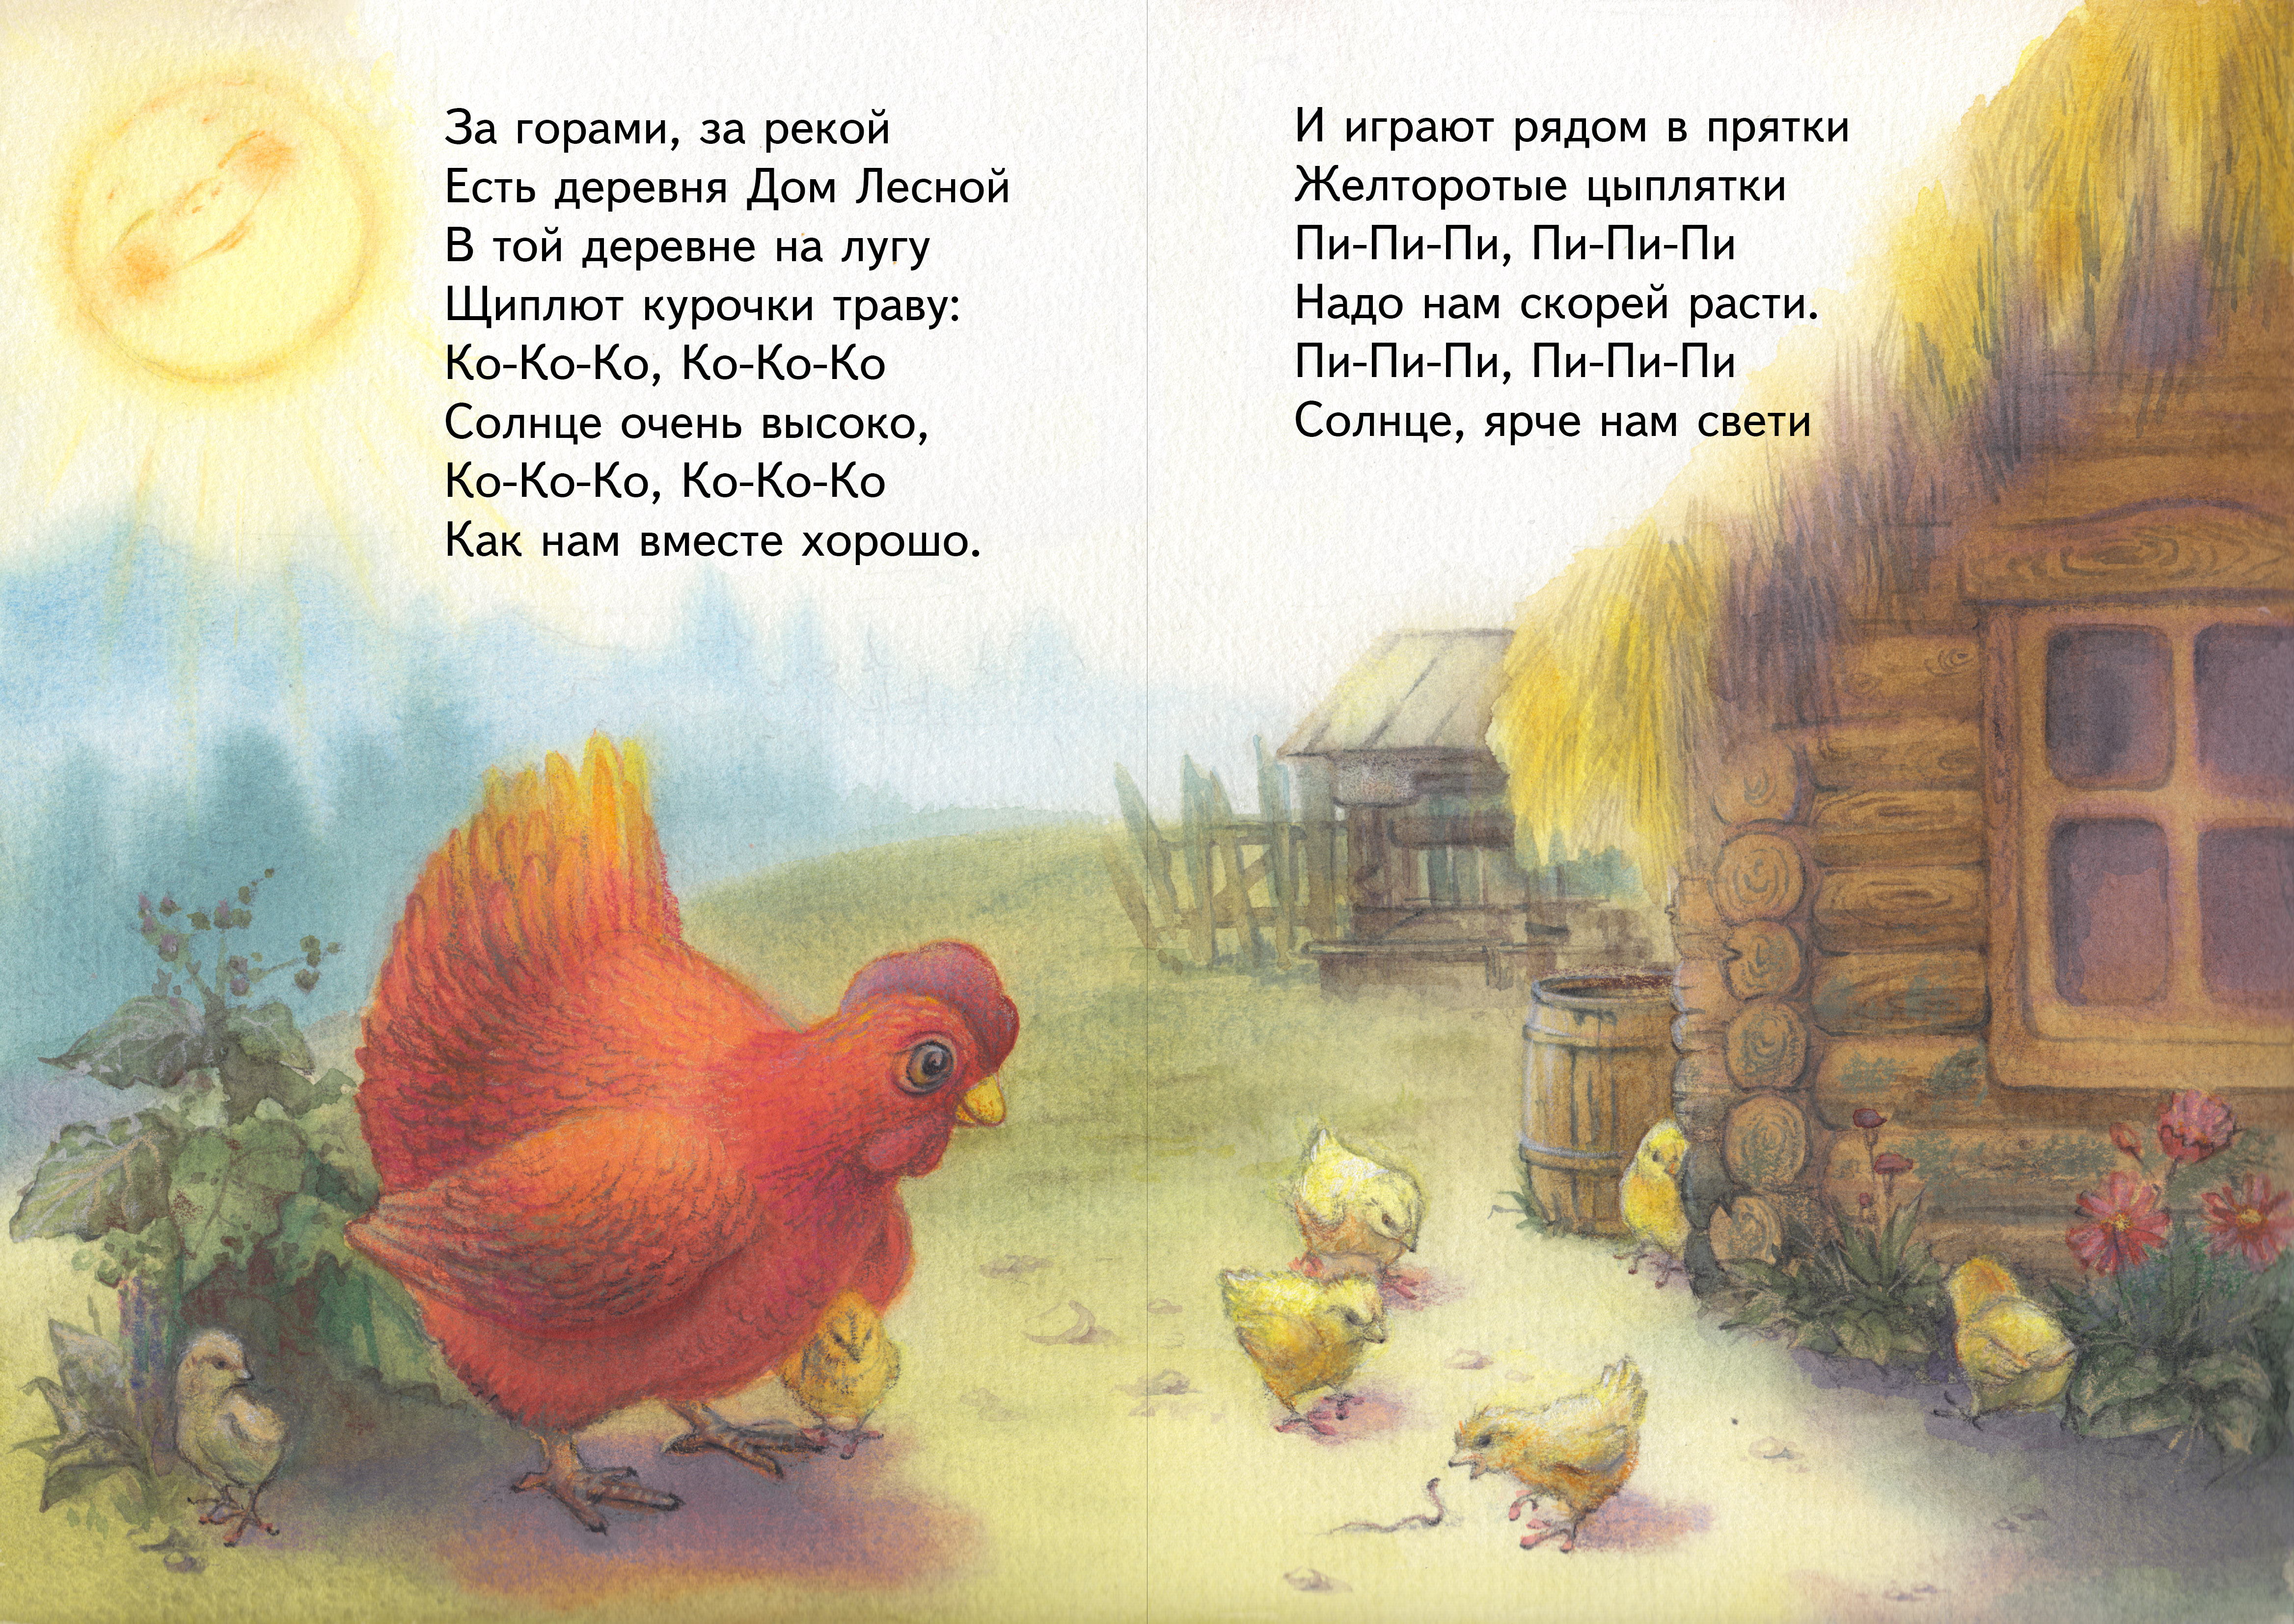 Стих про цыпленка